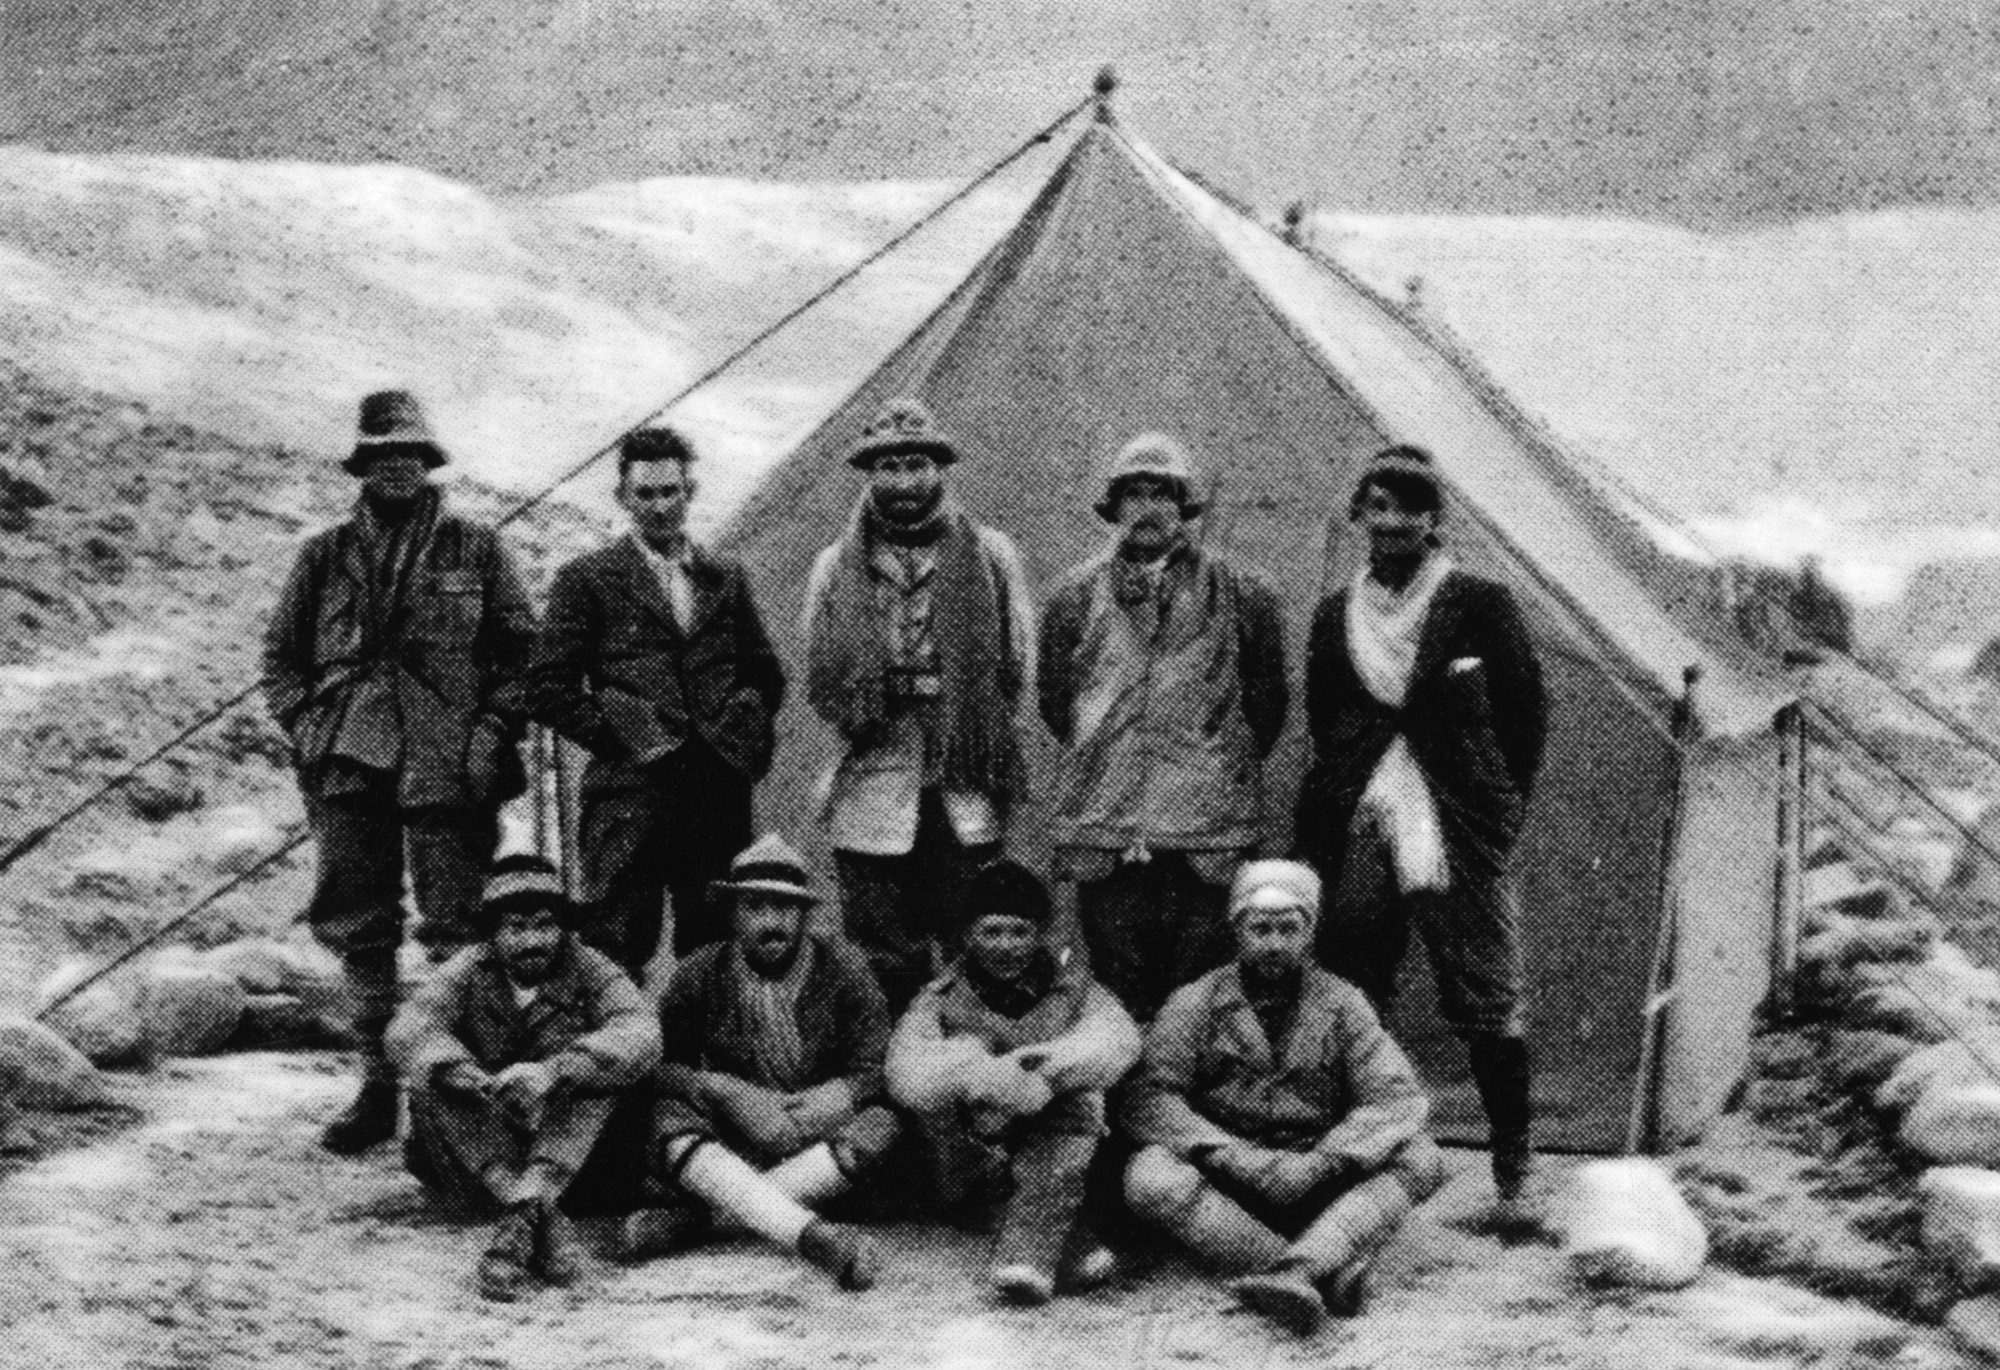 1924: Edward Norton (Mitte hintere Reihe) und Howard Somervell (Dritter vordere Reihe) am Mount Everest